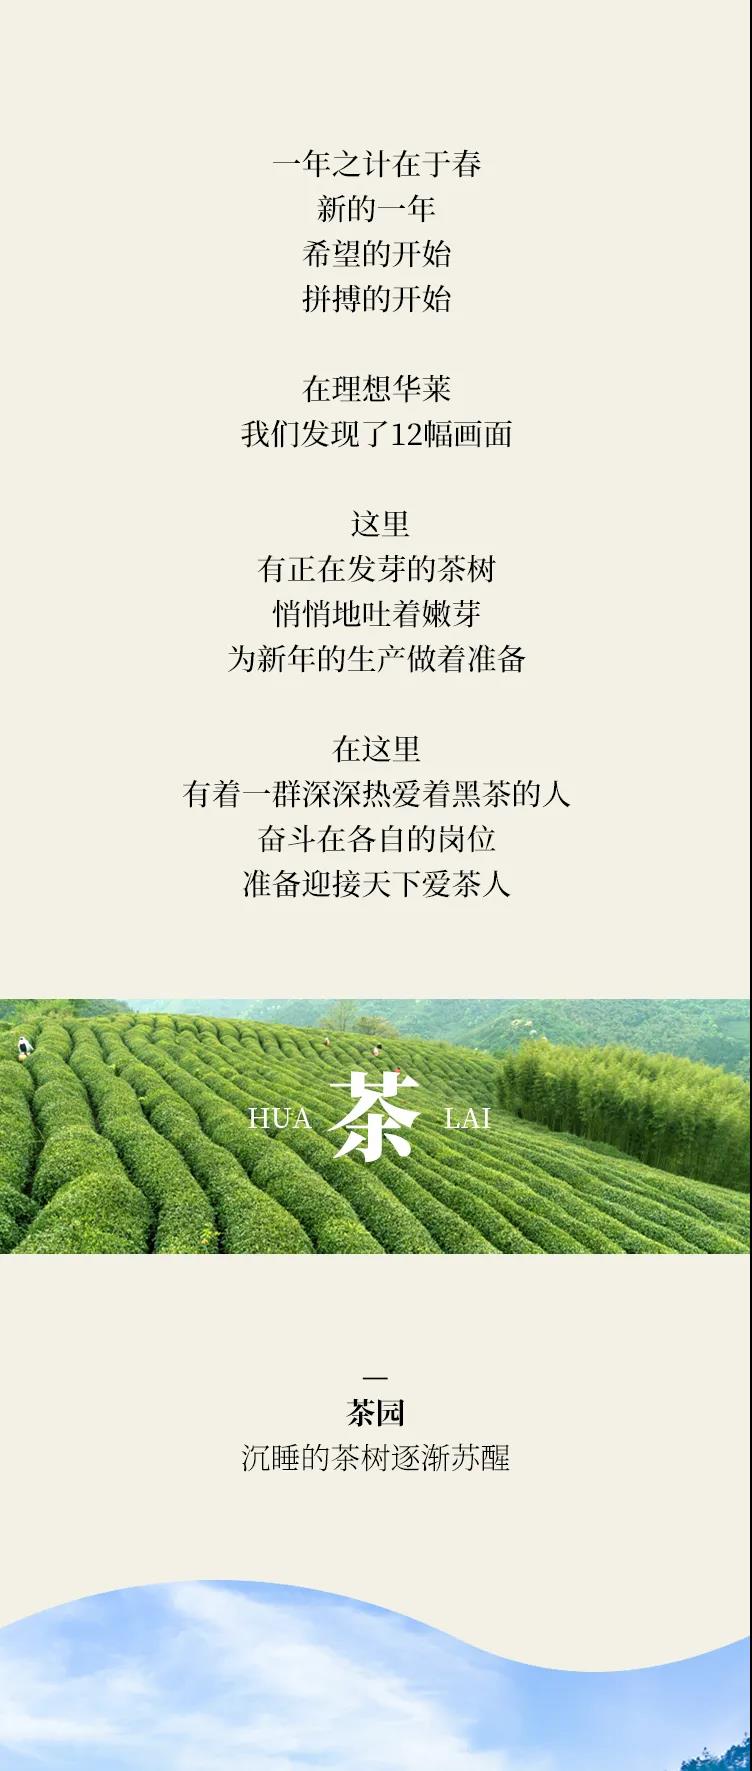 理想华莱丨扬中国黑茶 助产业兴盛 我们一起向未来